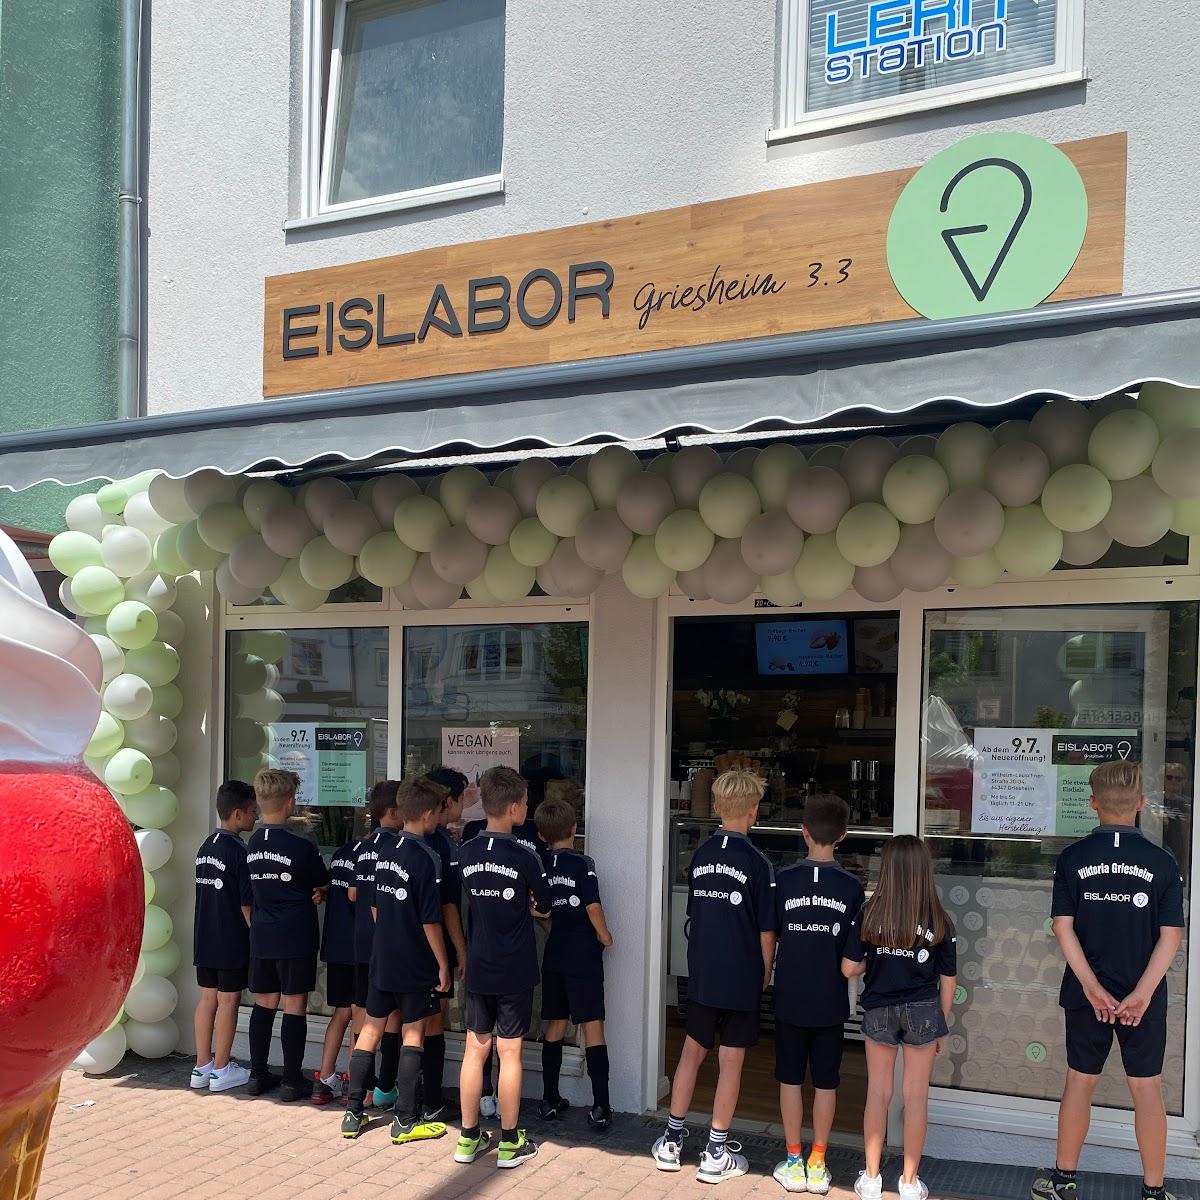 Restaurant "Eislabor  3.3" in Griesheim